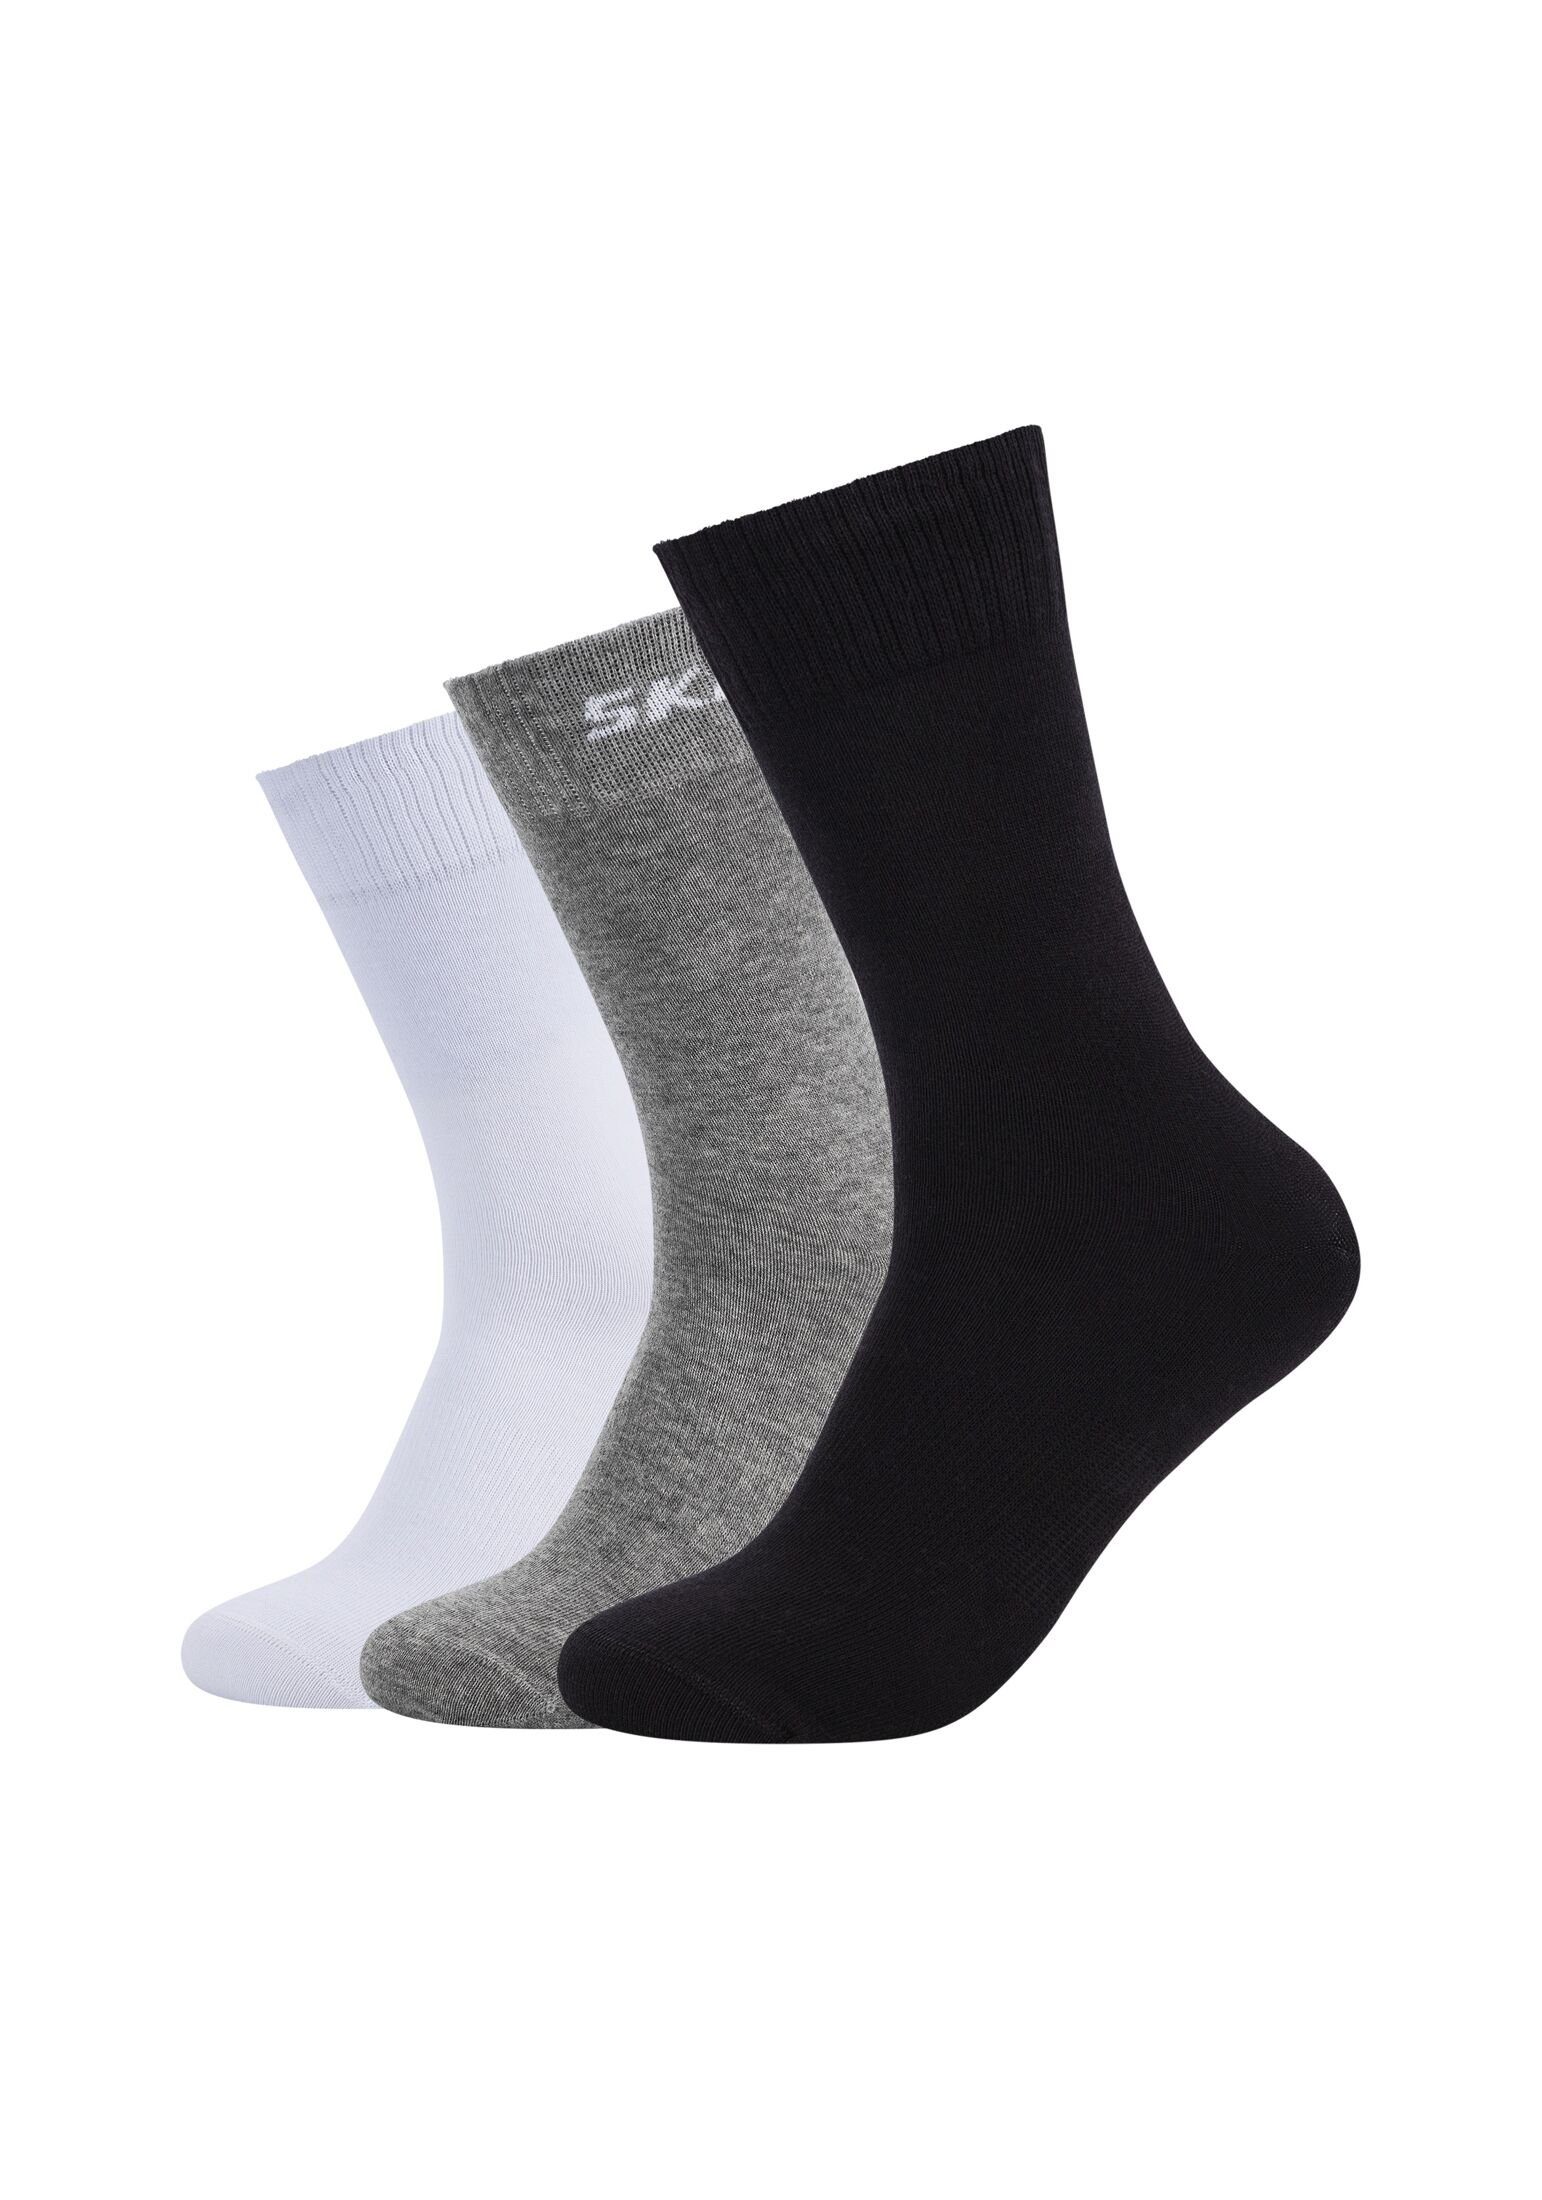 Skechers black/grey Pack mix Socken Socken 6er